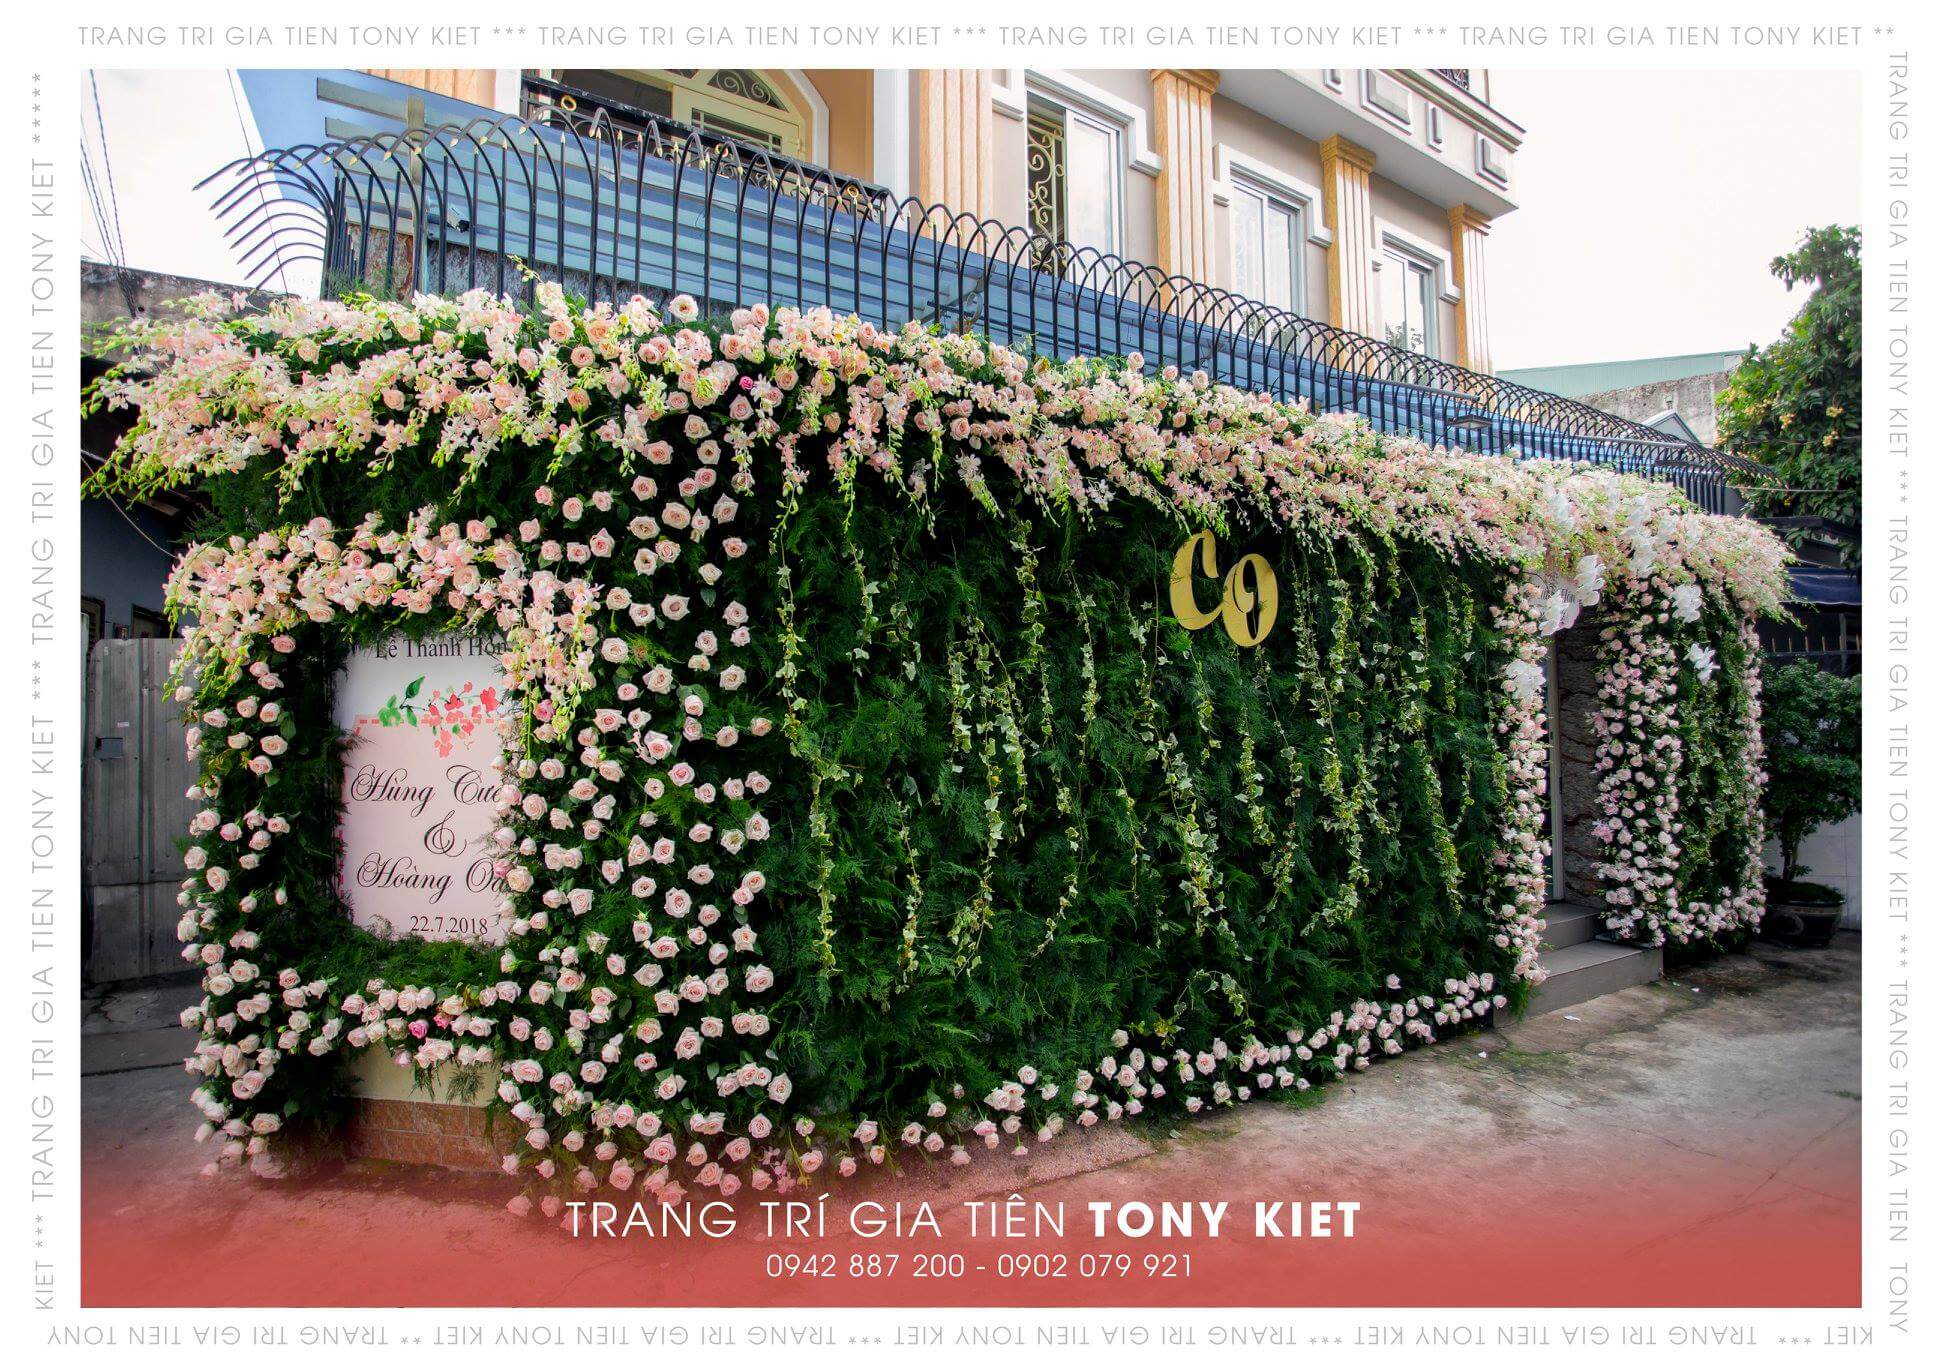 Tony Kiệt Marry